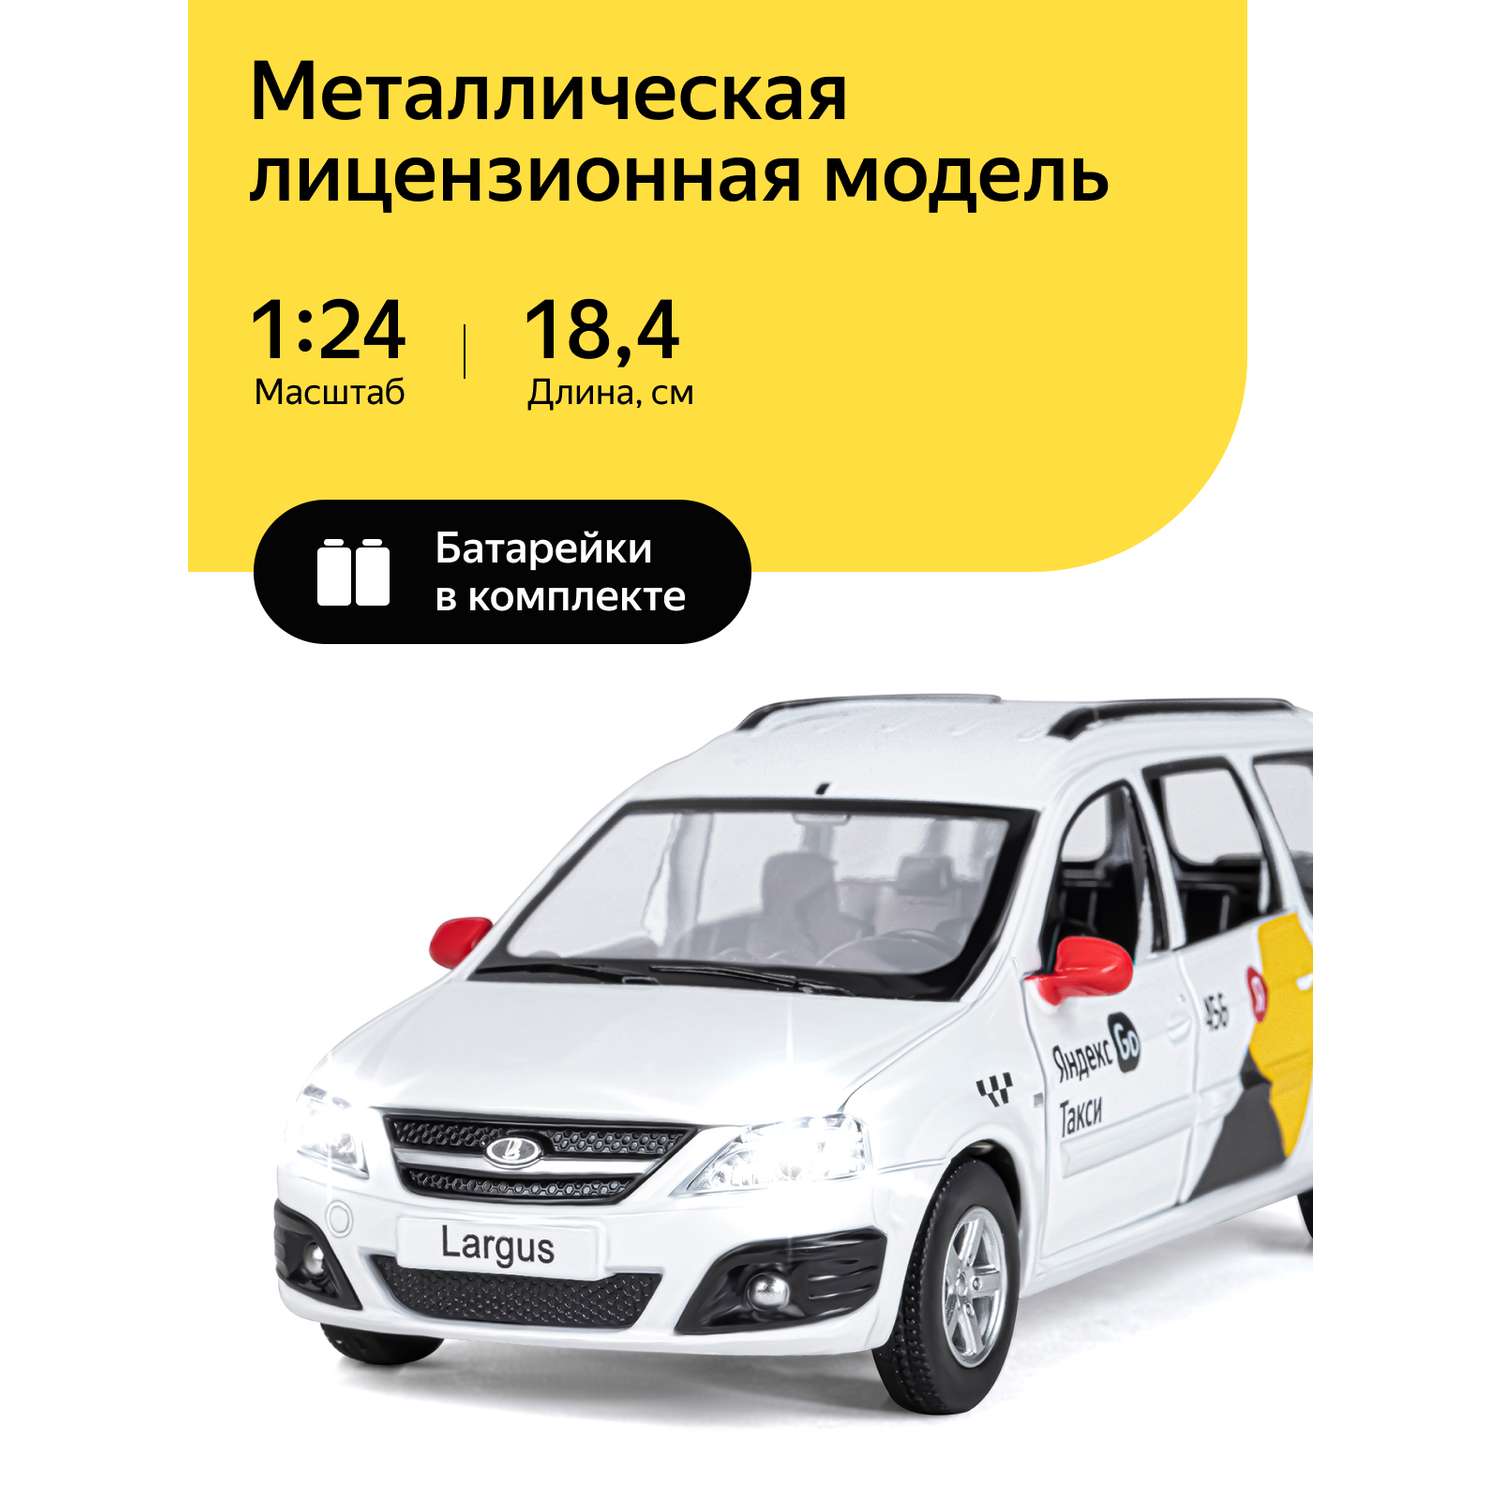 Машинка металлическая Яндекс GO игрушка детская LADA LARGUS 1:24 белый Озвучено Алисой JB1251343/Яндекс GO - фото 1